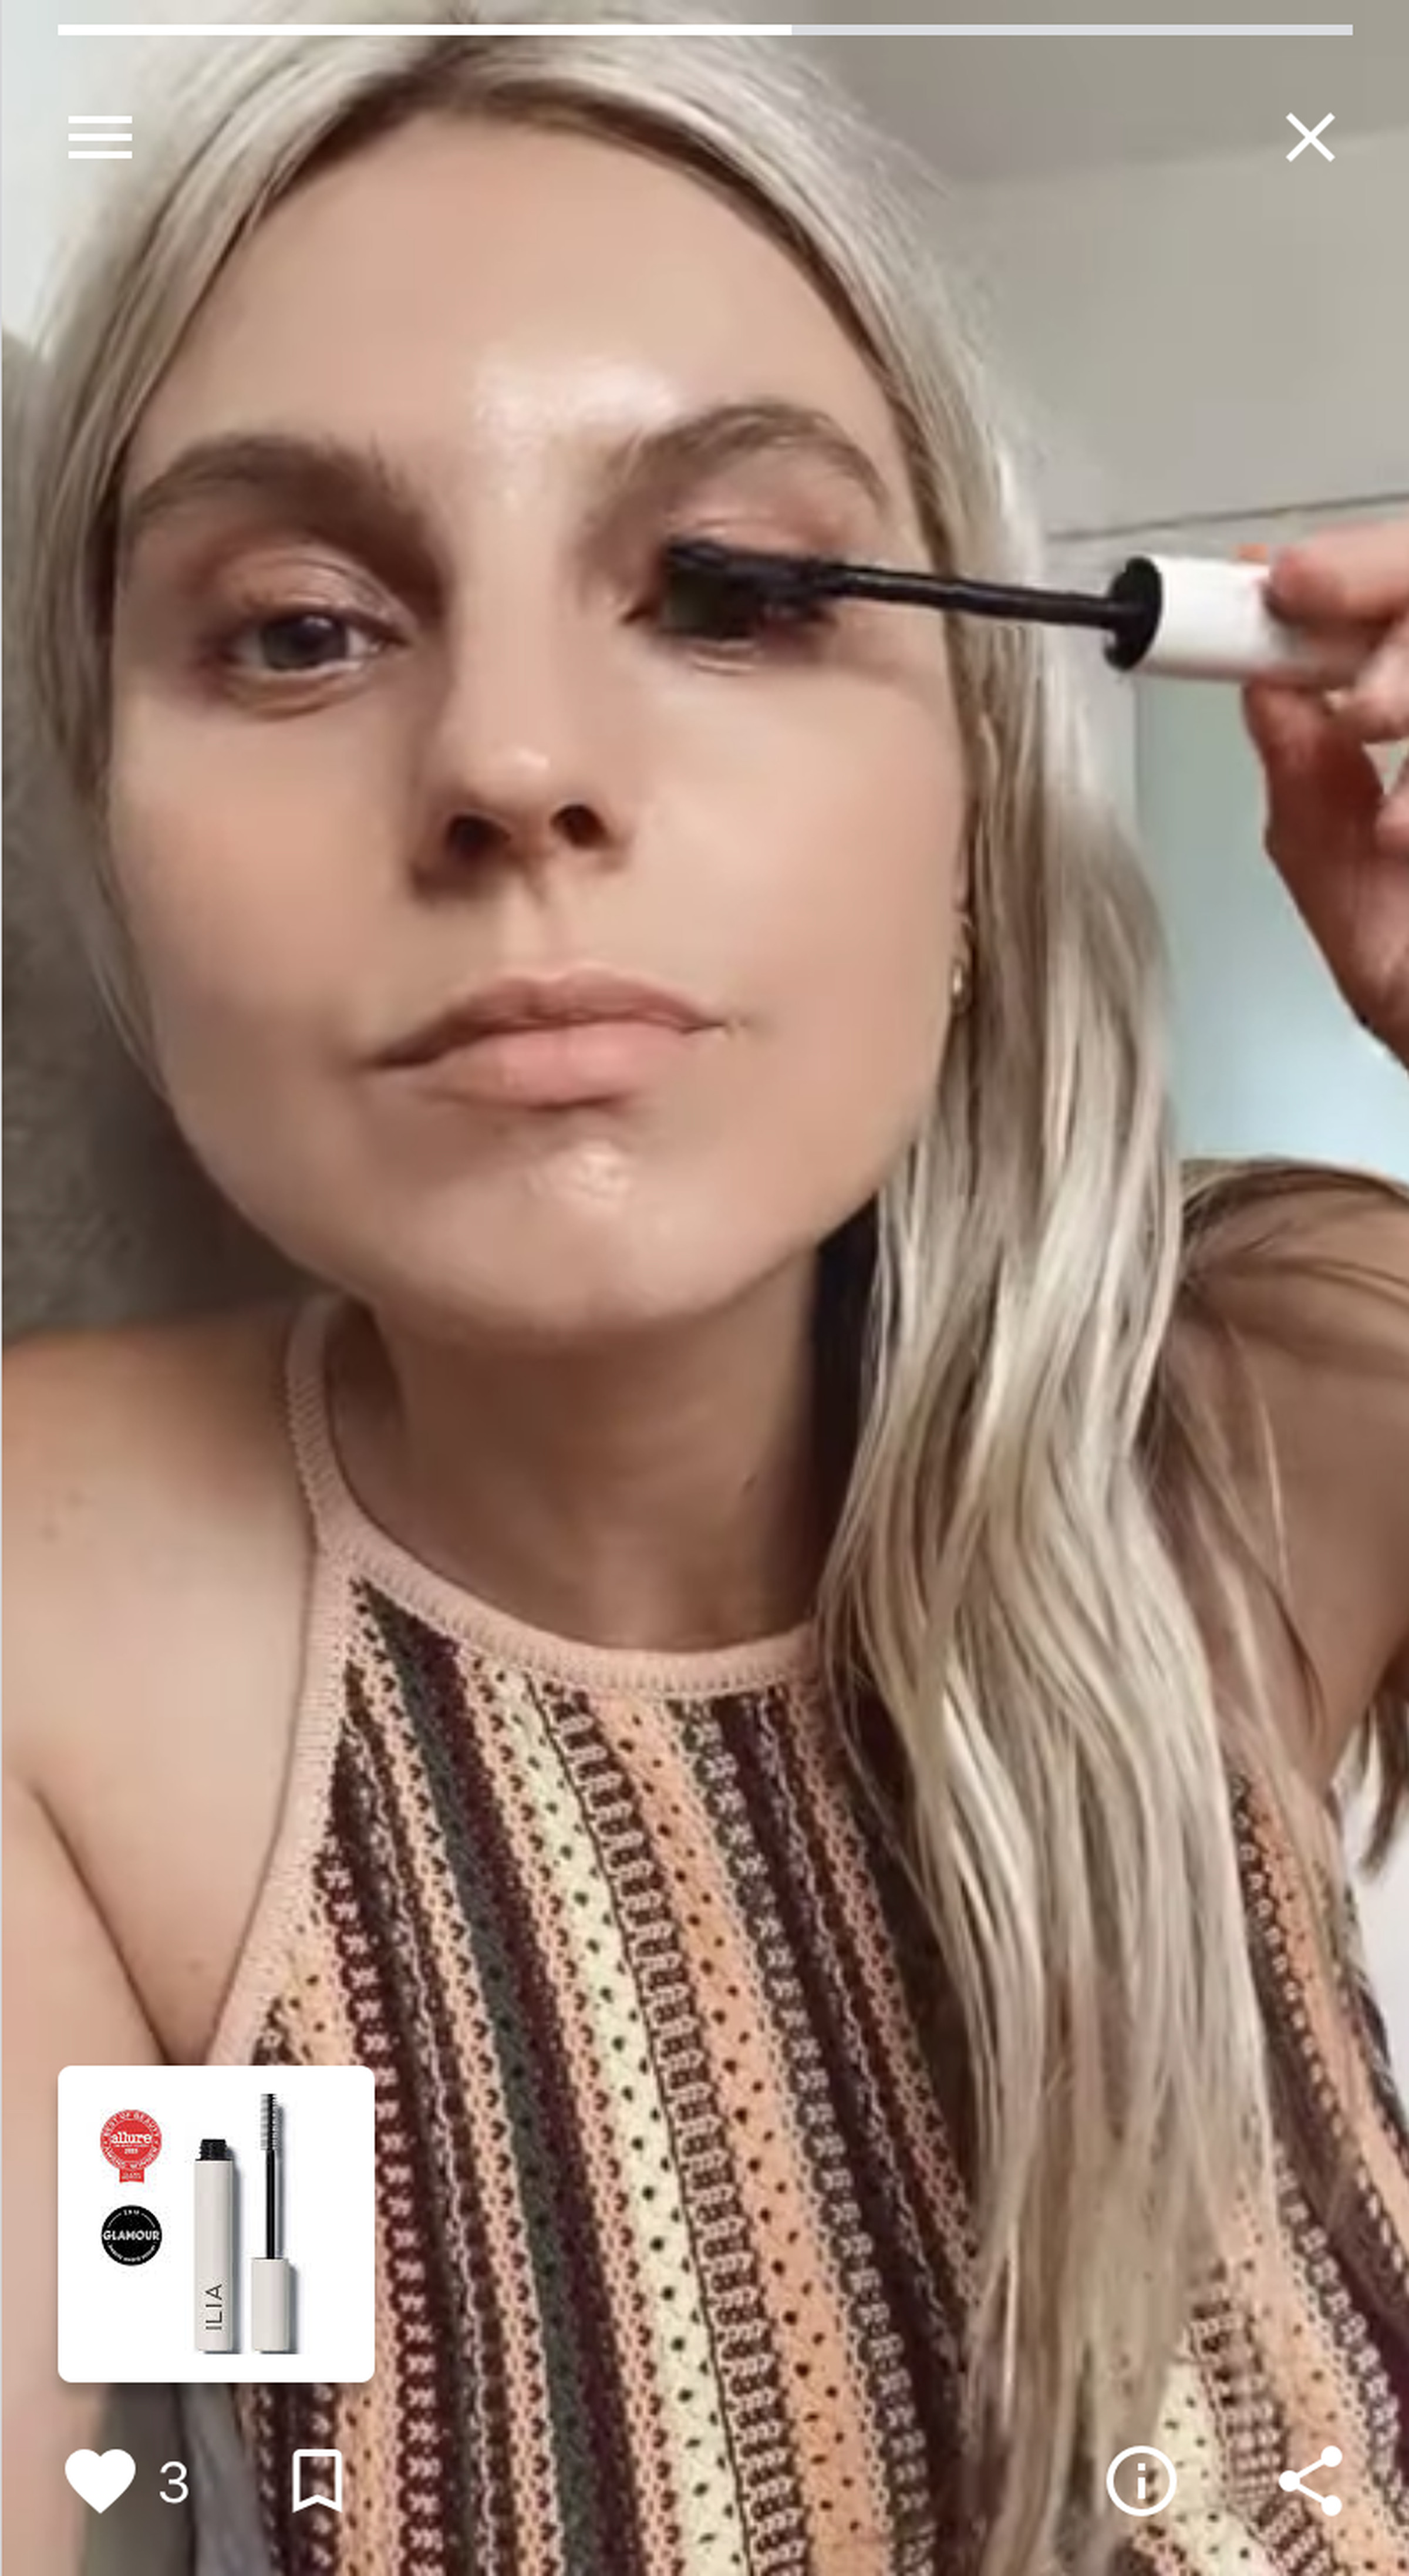 Hélène Heath shows mascara in one of her Shoploop videos.